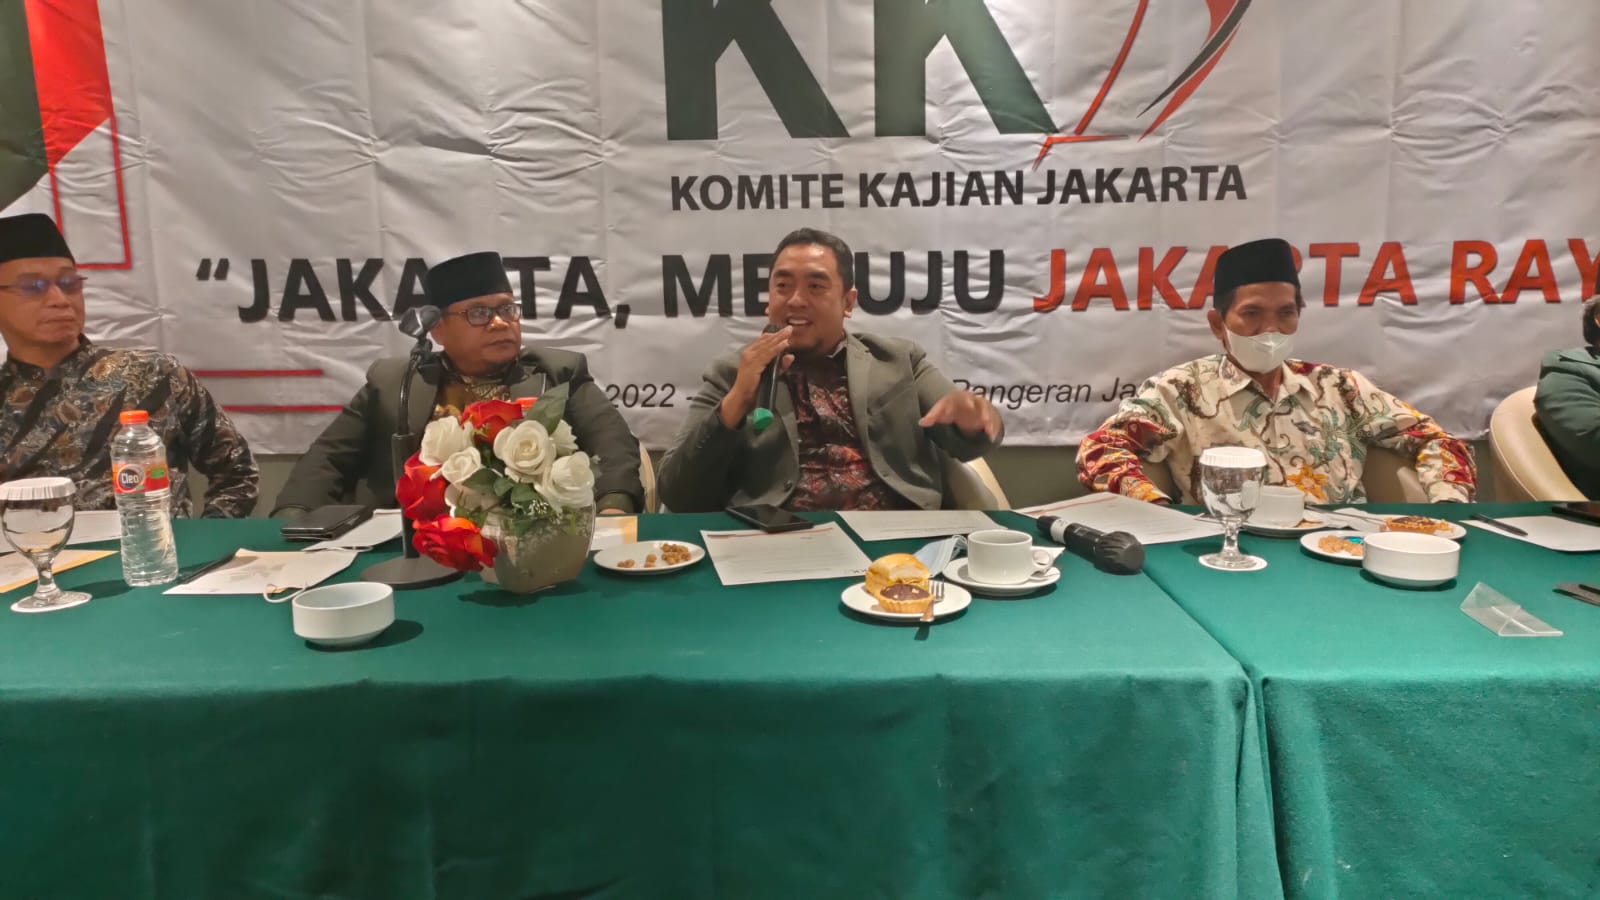 Usulan KKJ Setelah Ibu Kota Negara RI Pindah, Menjadi Daerah Istimewa Jakarta Raya